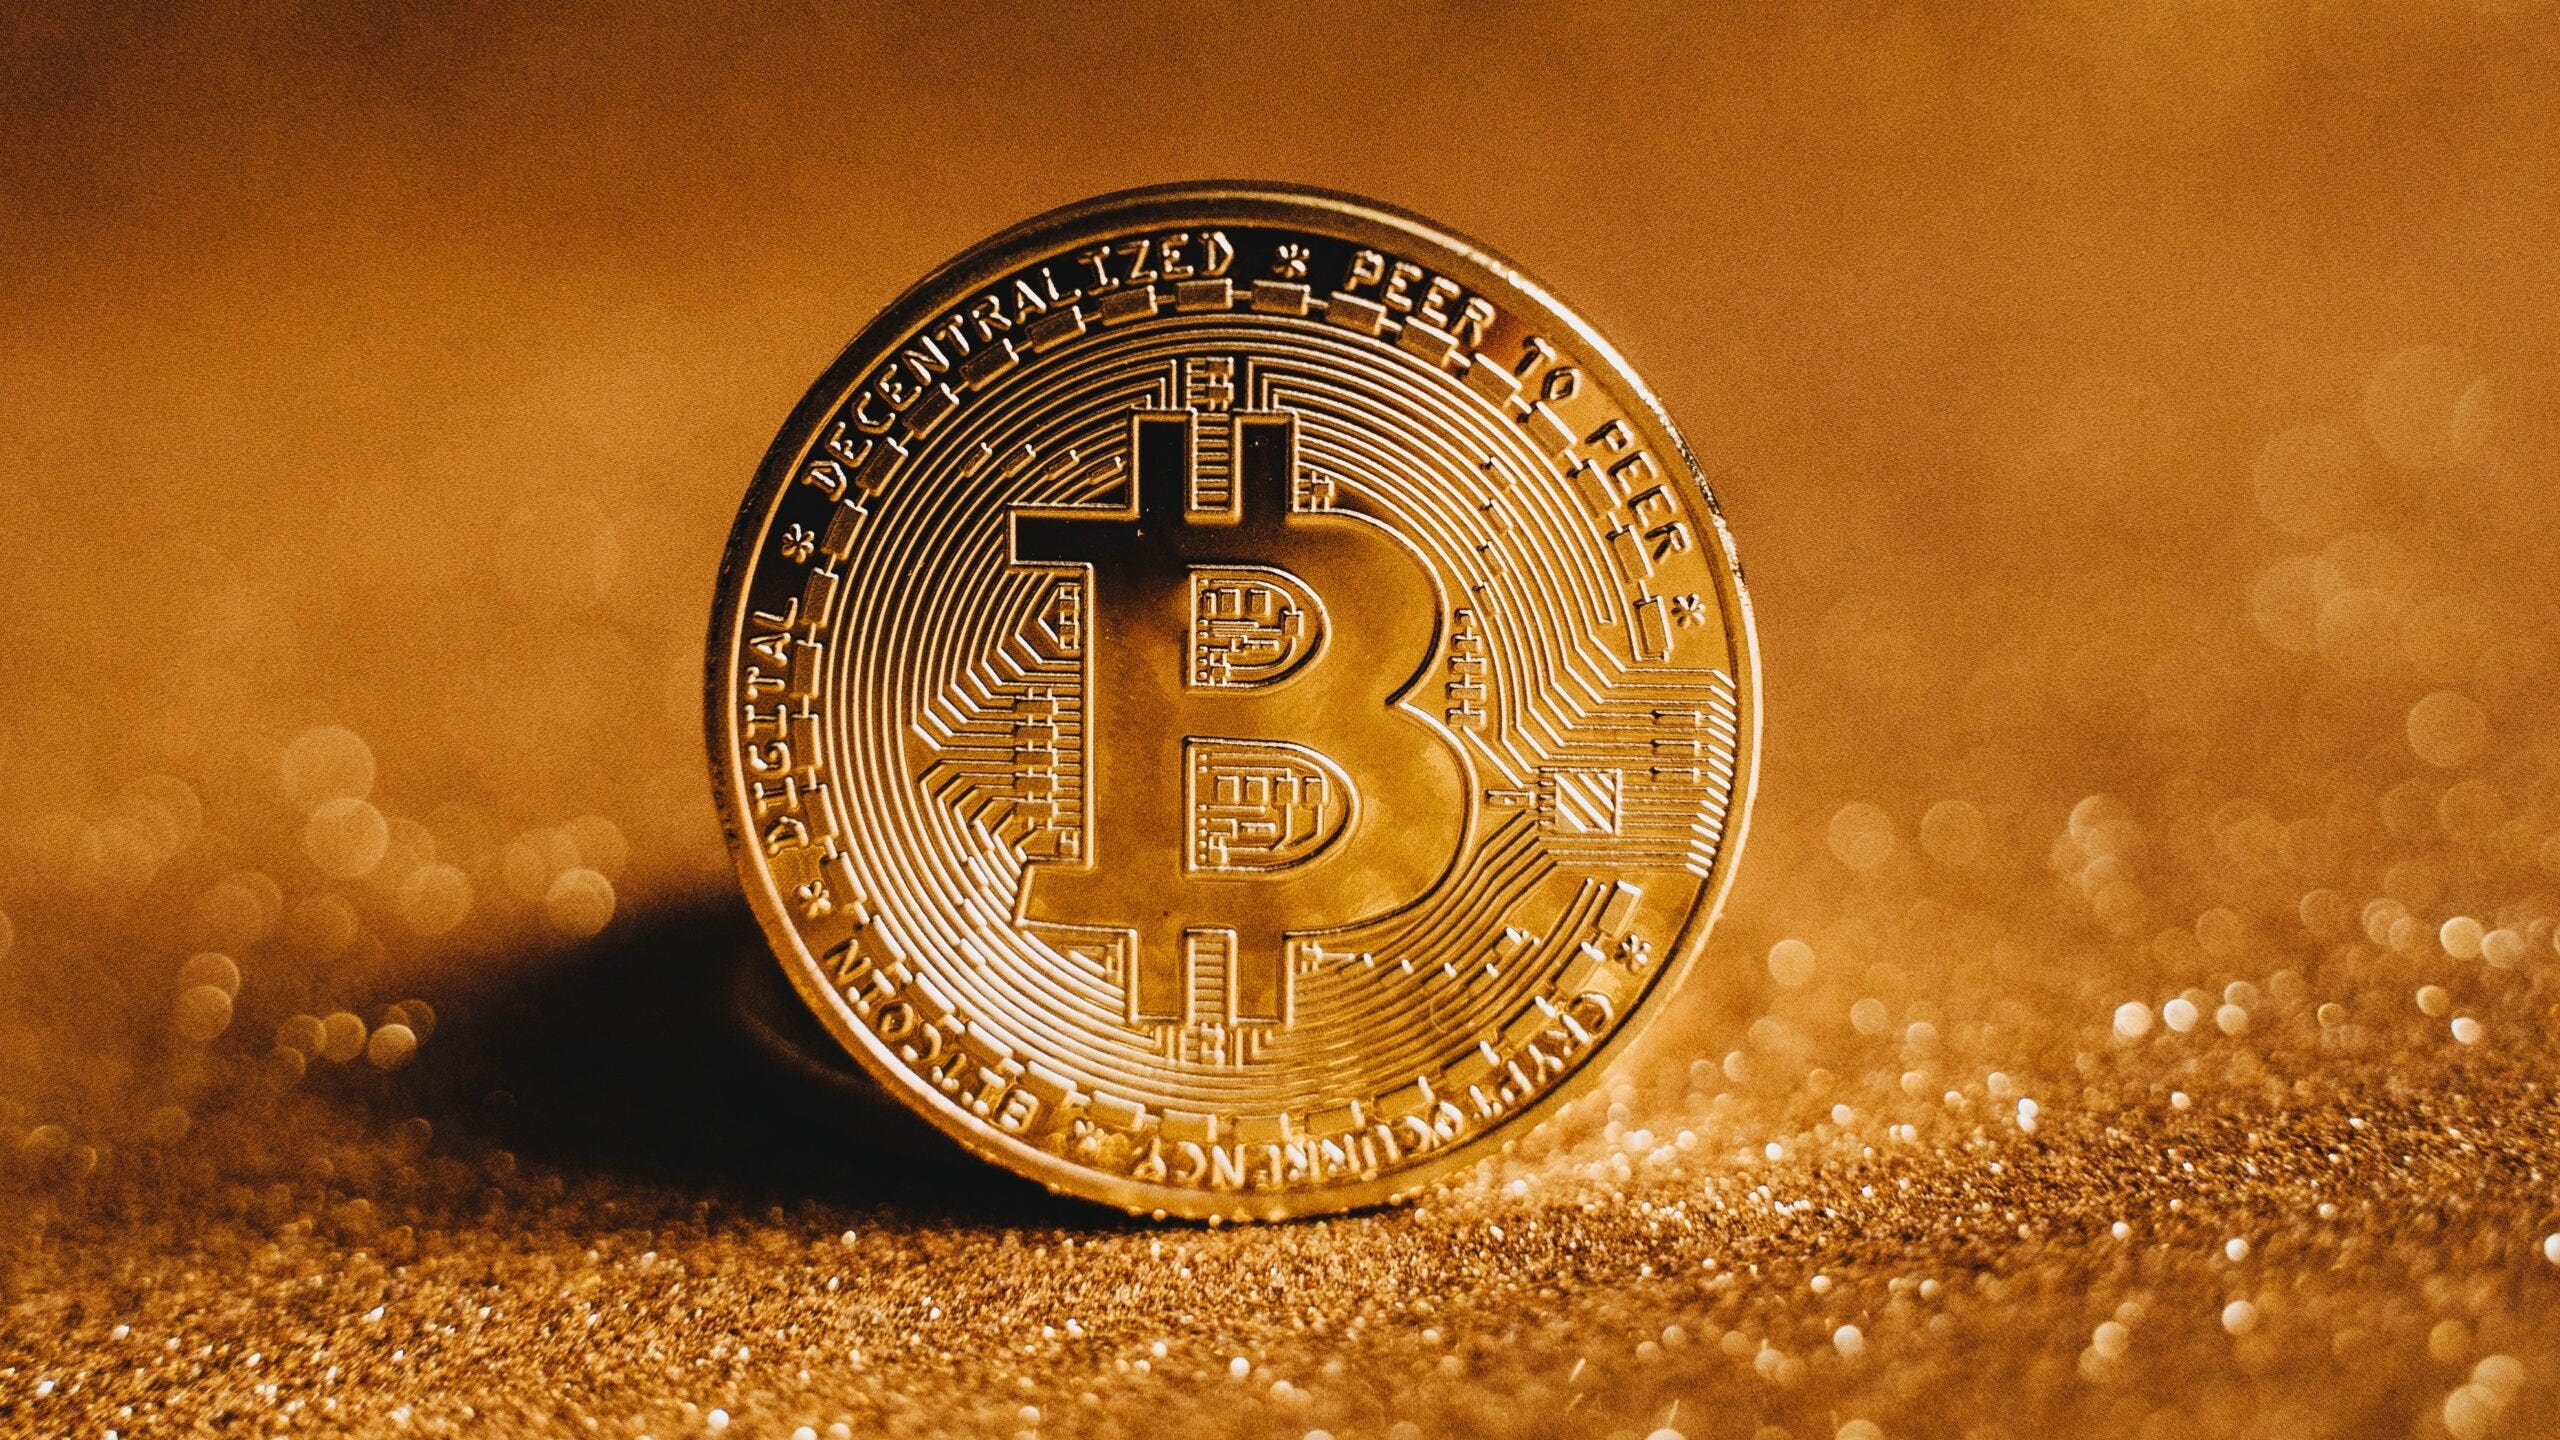 Convert 1 BTC to USD - Bitcoin price in USD | CoinCodex